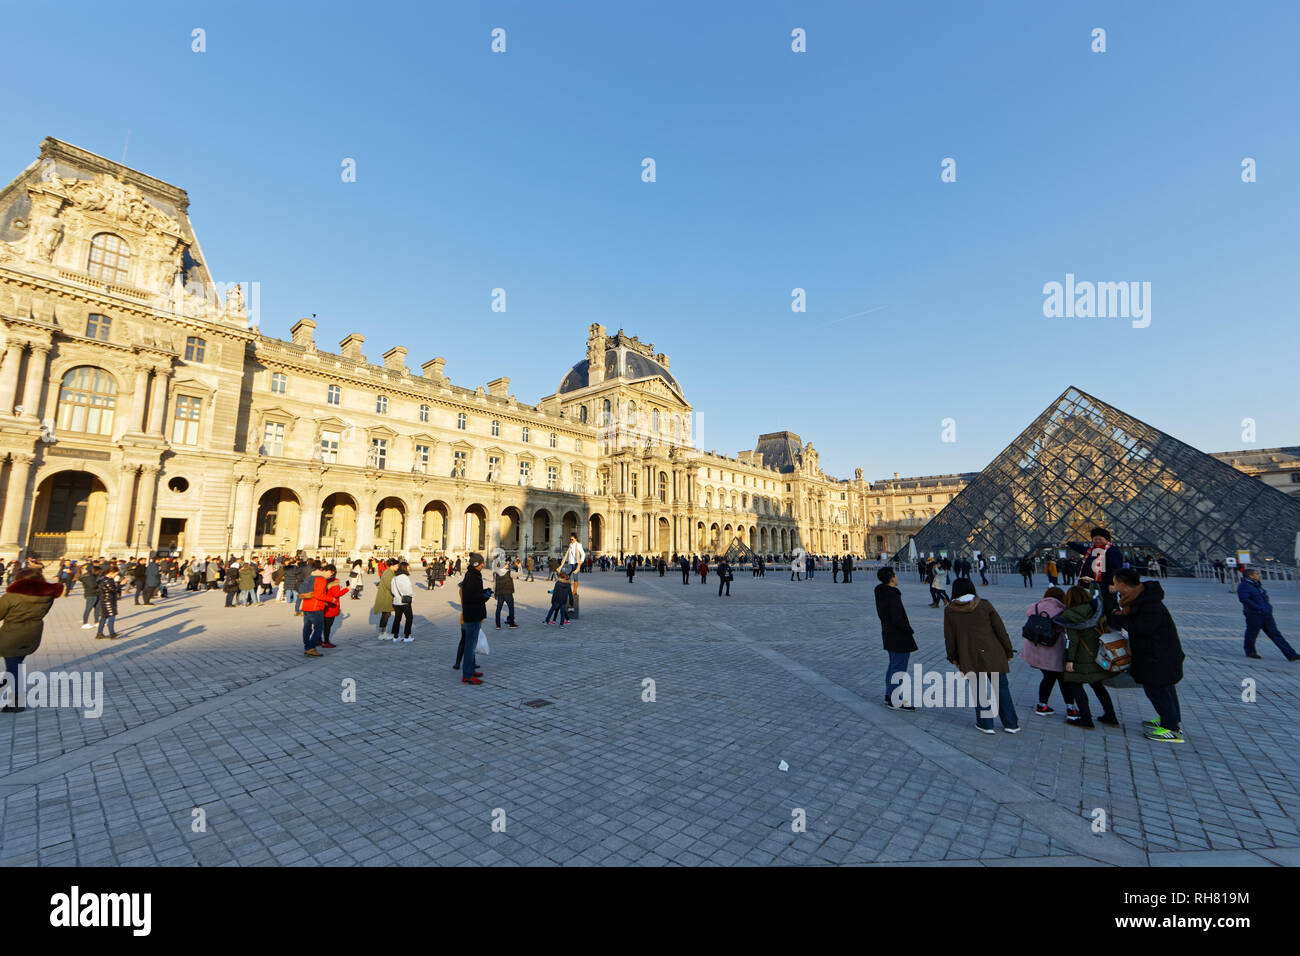 Palais du Louvre - Paris, France Stock Photo